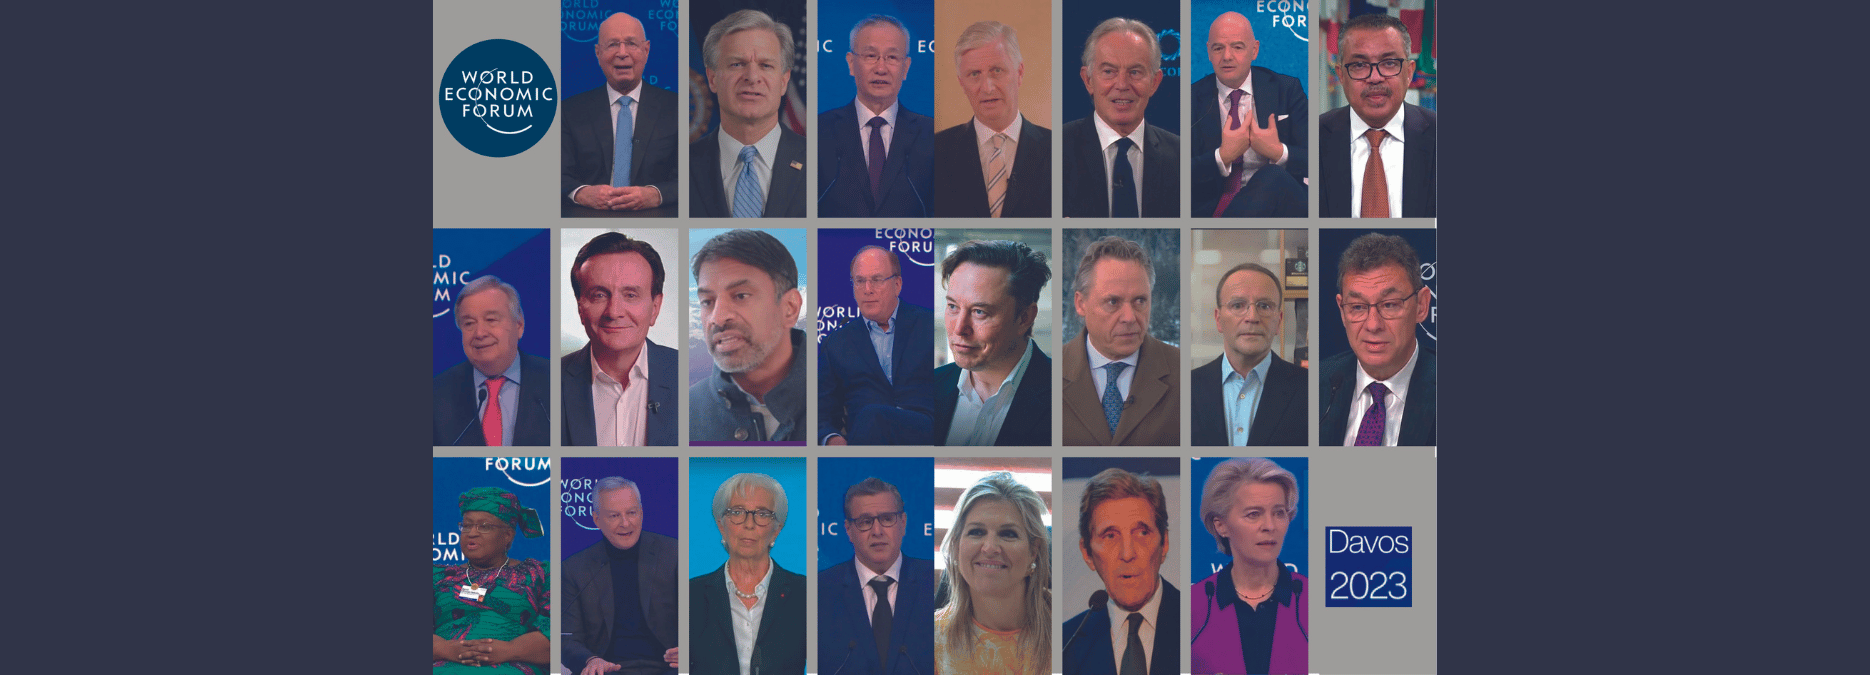 Mondialistes et crypto-mondialistes le Forum de Davos et ses séides